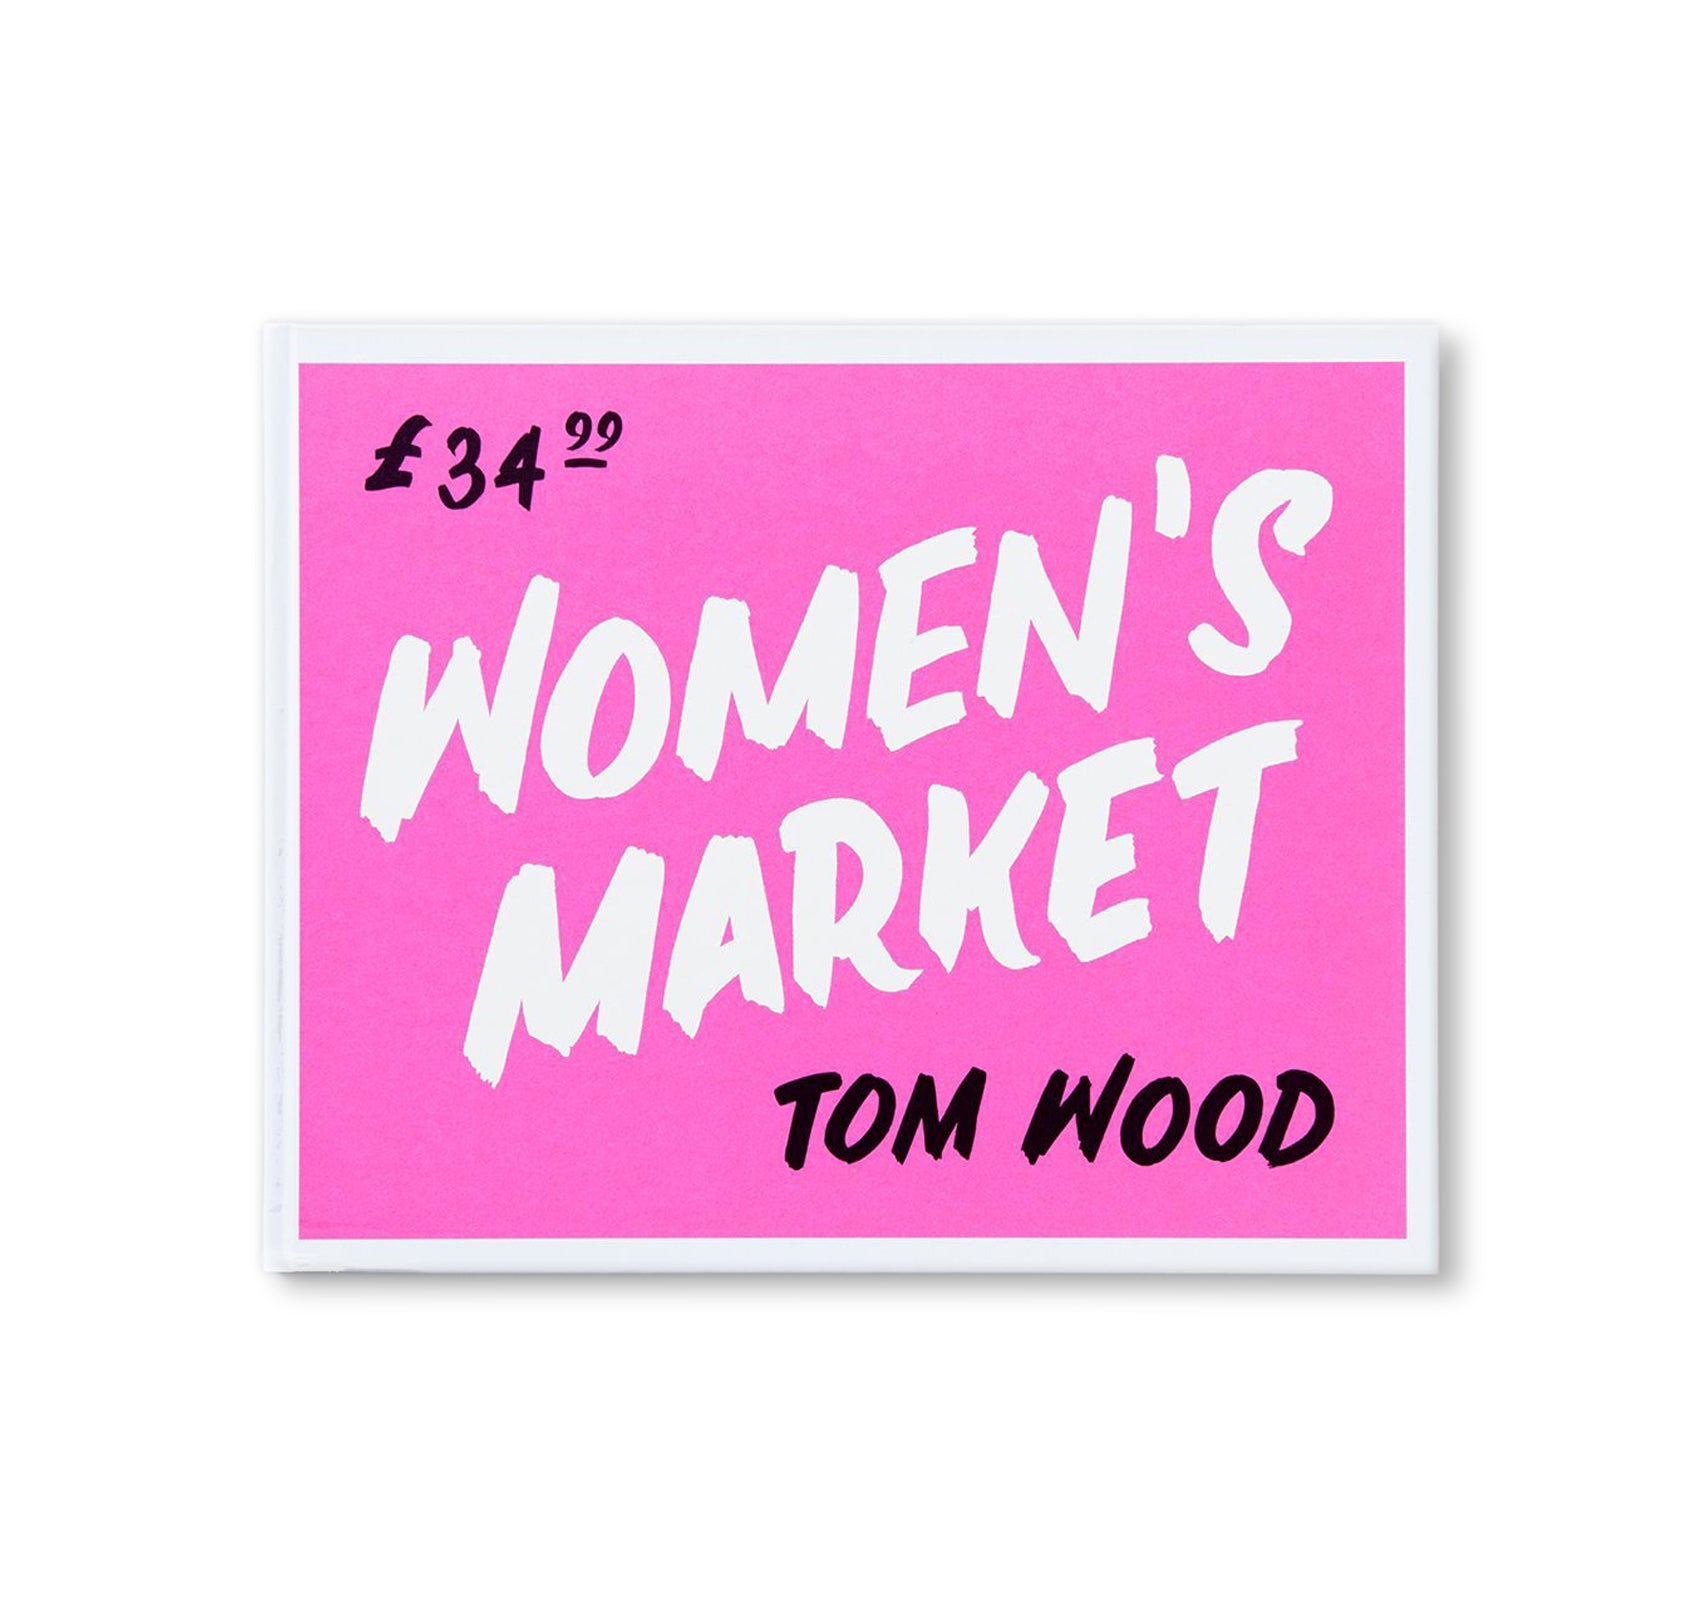 WOMEN'S MARKET by Tom Wood